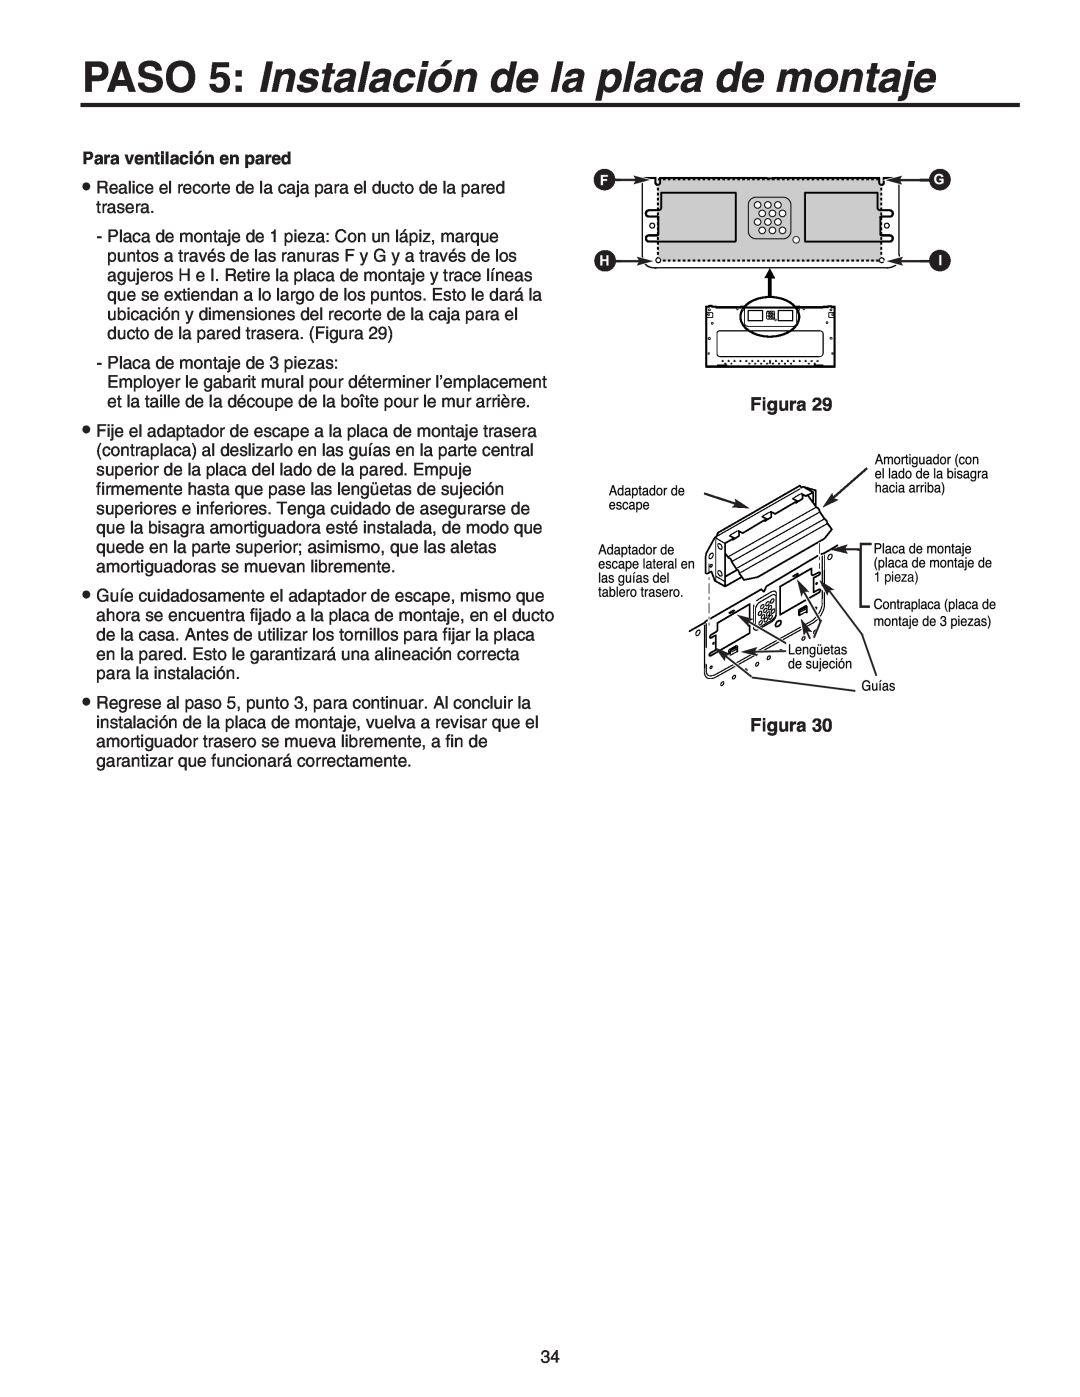 Maytag 8101P641-60 installation instructions PASO 5 Instalación de la placa de montaje, Figura, Para ventilación en pared 